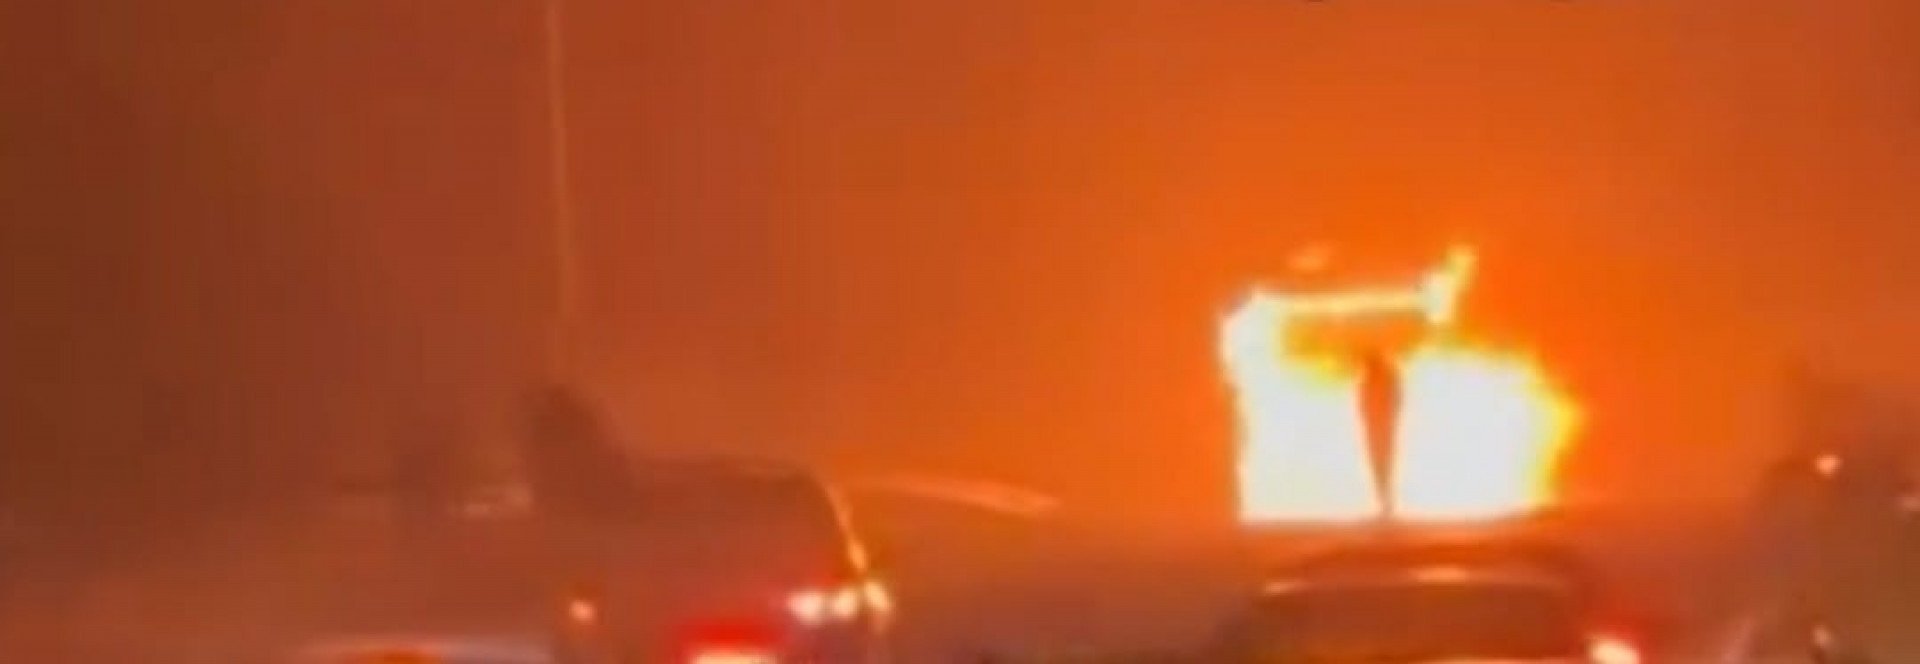 Bombeiros estão no combate às chamas do coletivo que pegou fogo na Rio-Santos - Divulgação/reprodução rede social